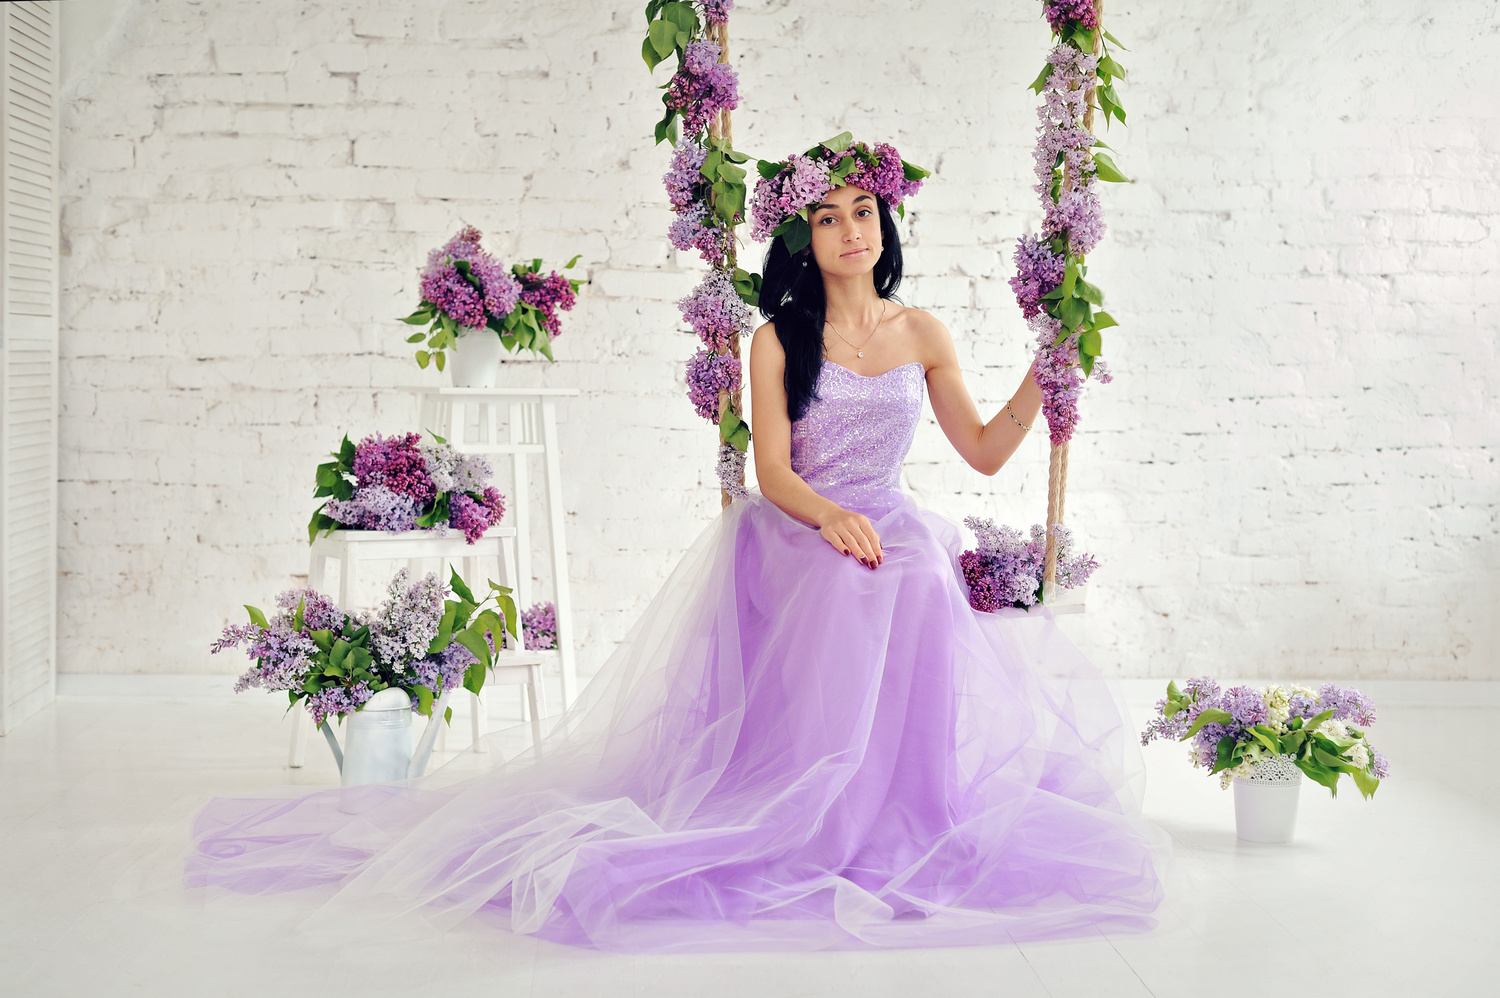 Свадьба в фиолетовом стиле: взрыв волшебных красок свежести